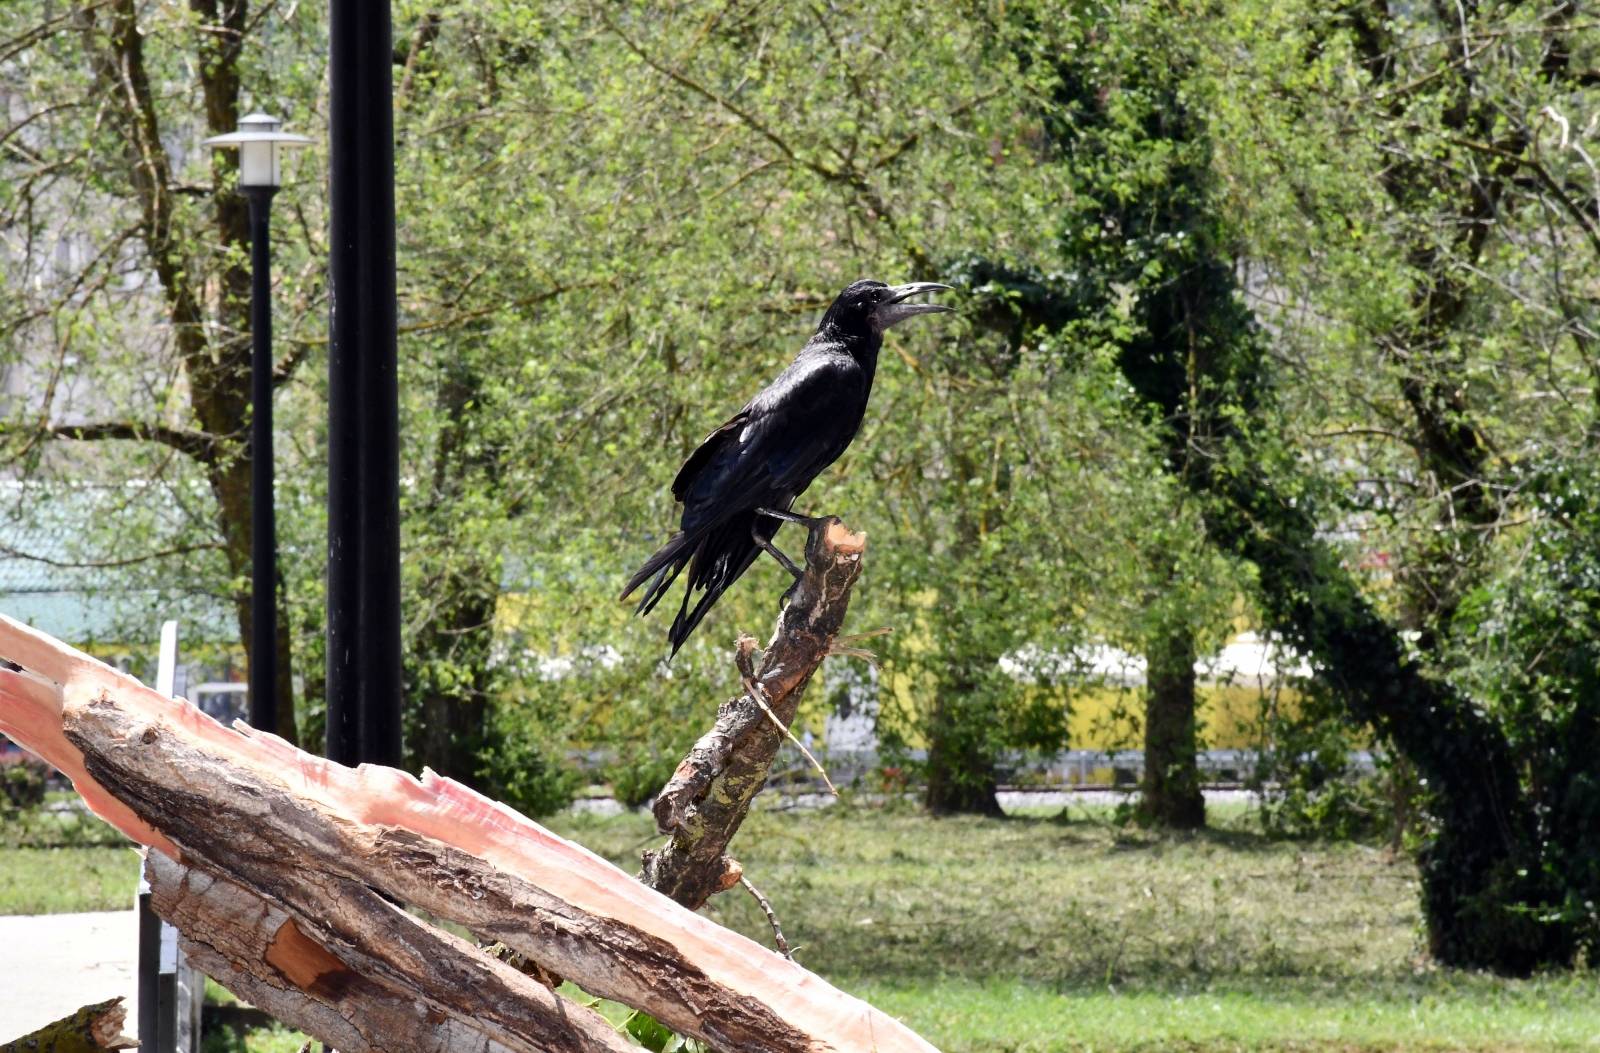 U jučerašnjem snažnom nevremenu stradale su i brojne ptice u parku Zvečevo pokraj Orljave.